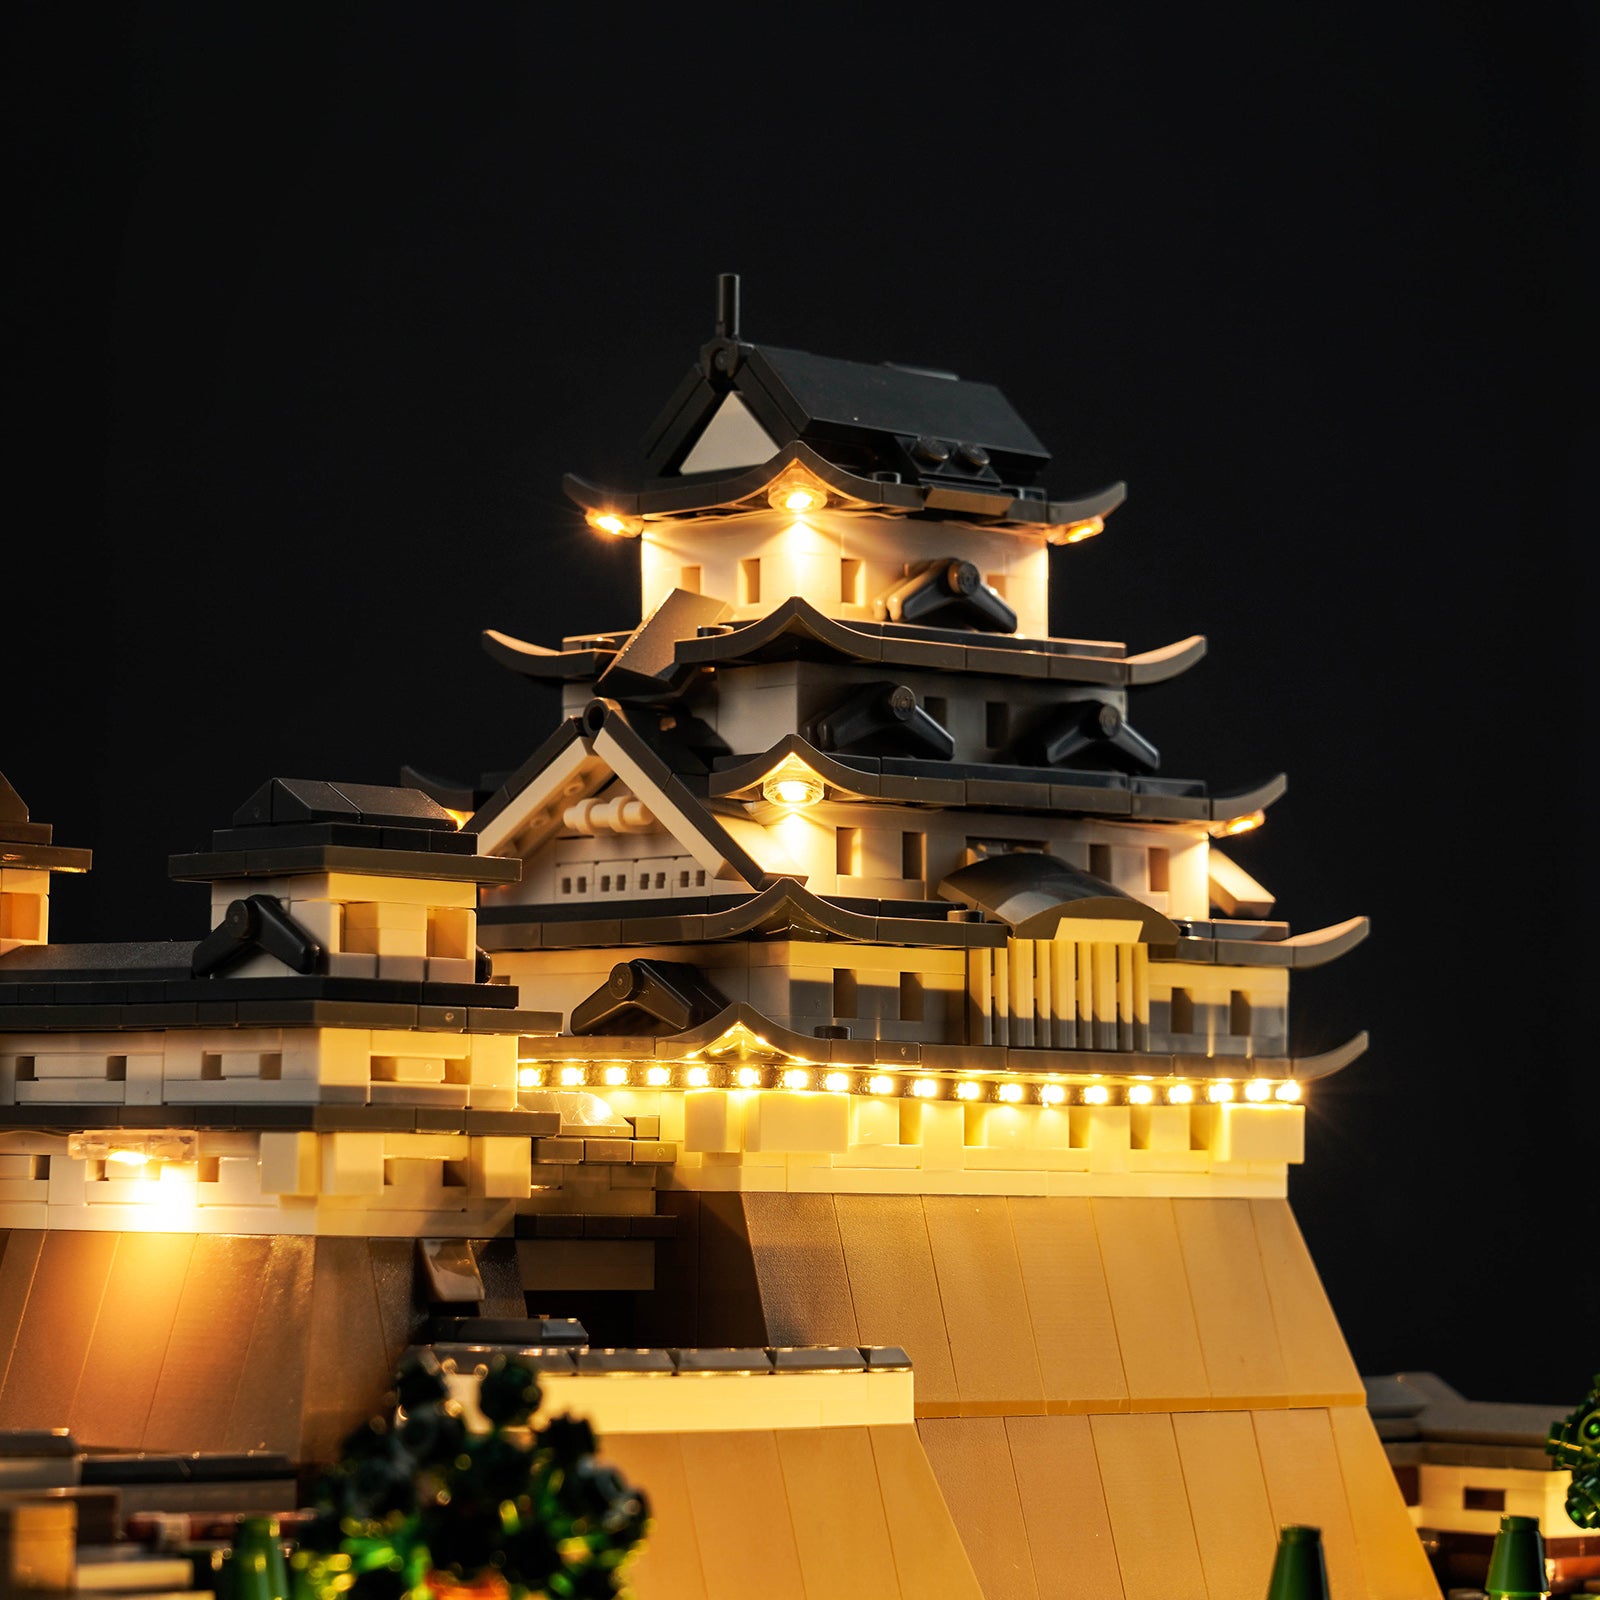 Kit d'éclairage BrickBling pour le château LEGO Himeji 21060